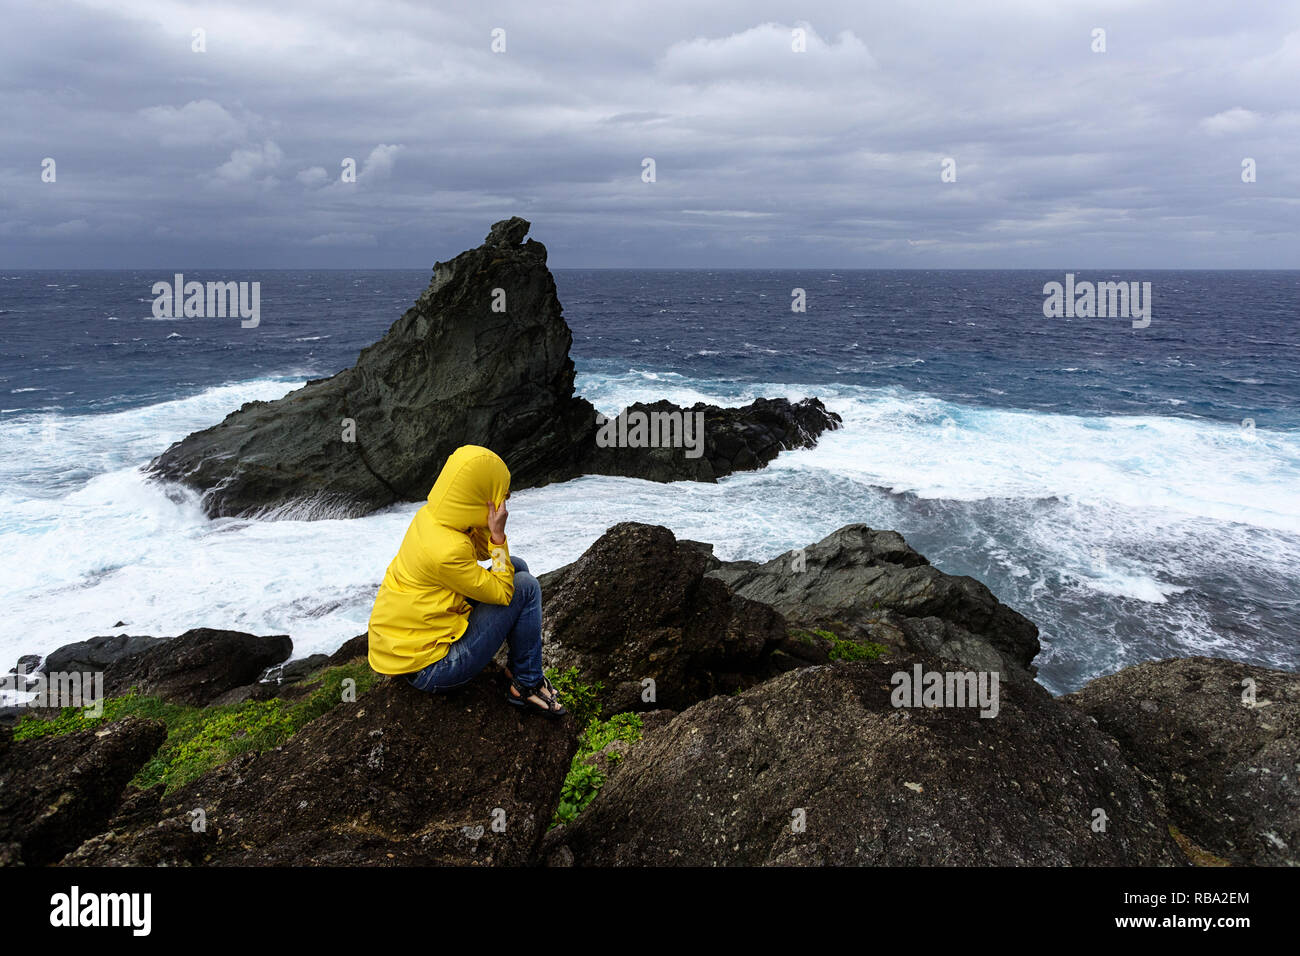 Woman in yellow jacket gel sur un rocher à la recherche à l'état de la mer sur la côte sauvage à Uganzaki dans le phare de l'Île Ishigaki, Japon Okinawa Banque D'Images